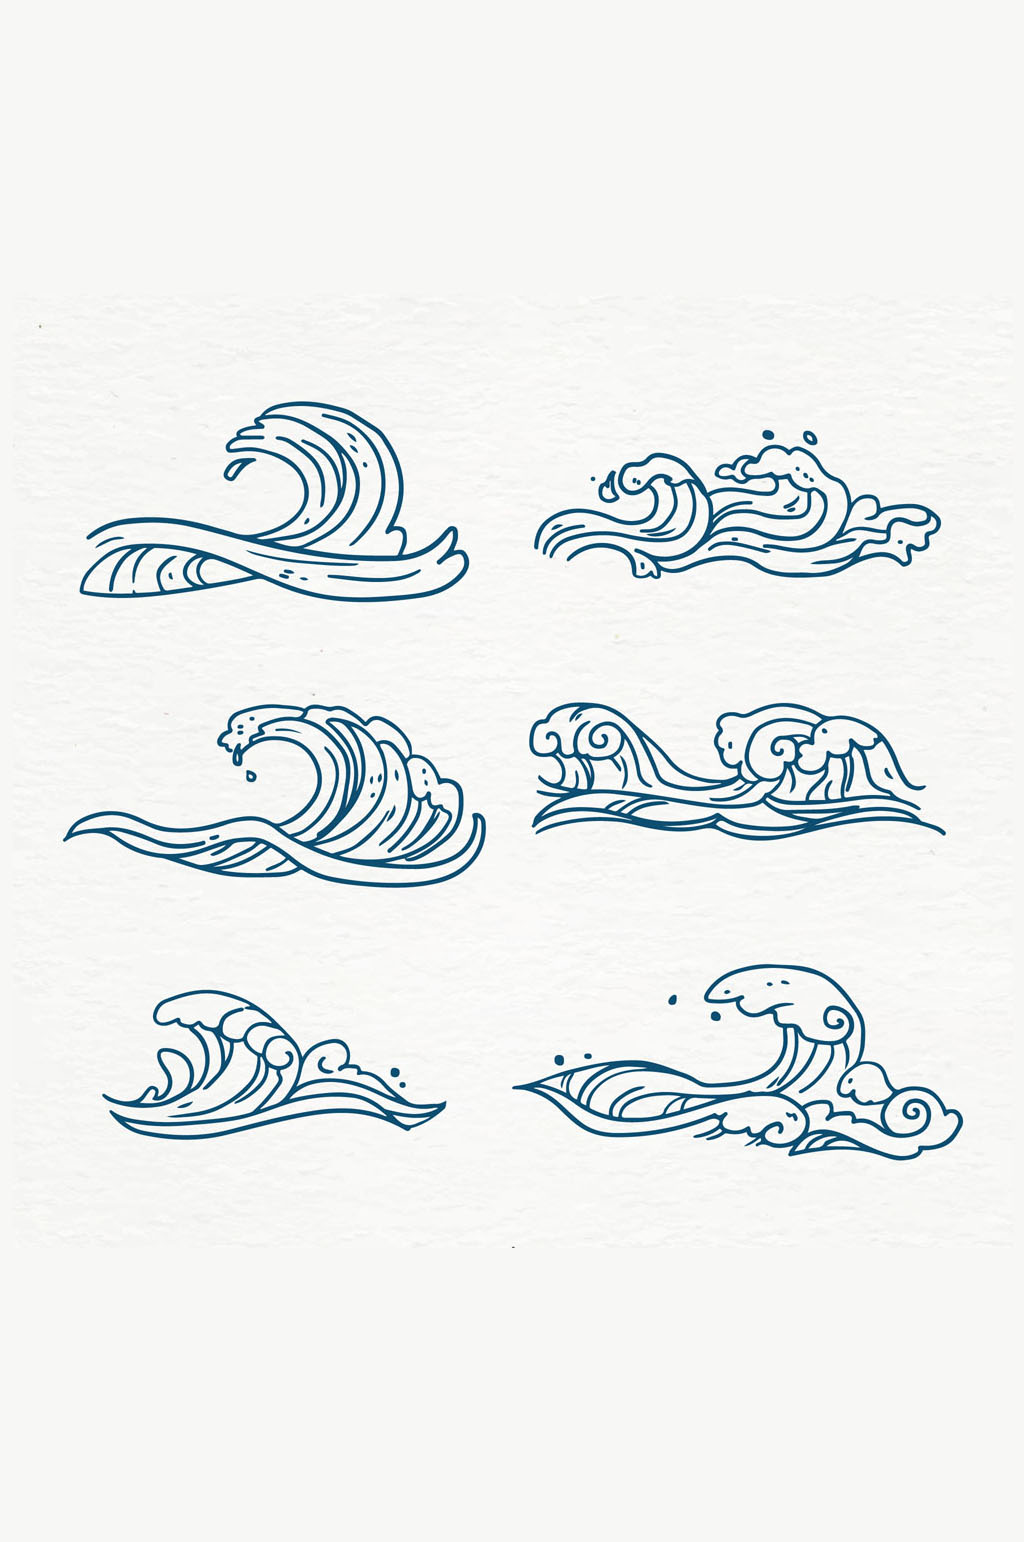 6款手绘蓝色海浪矢量素材